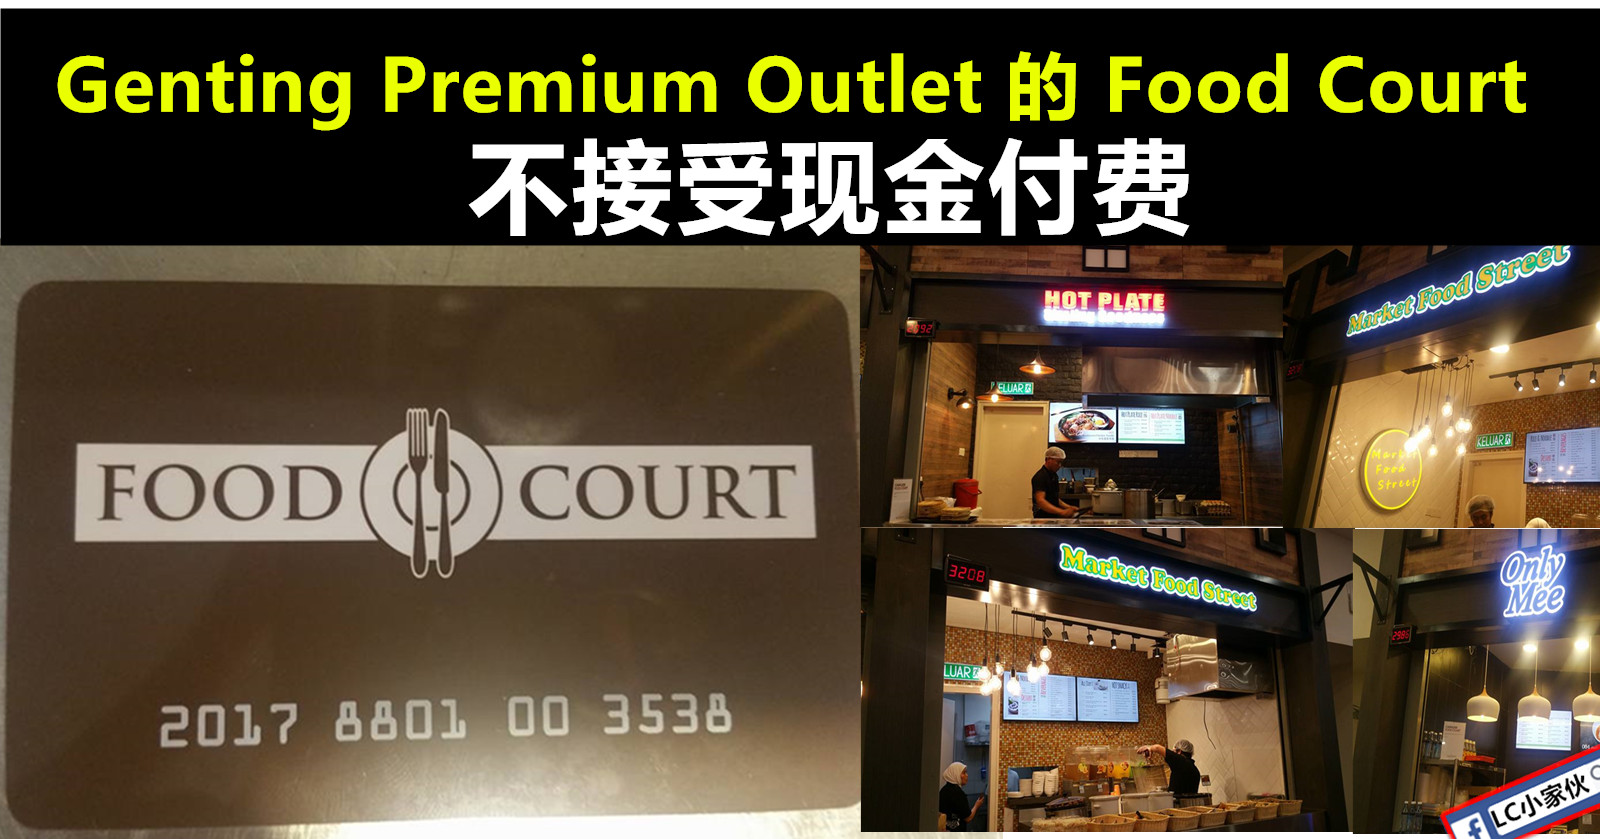 去Genting Premium Outlet 的Food Court需使用 Food Court Card ...